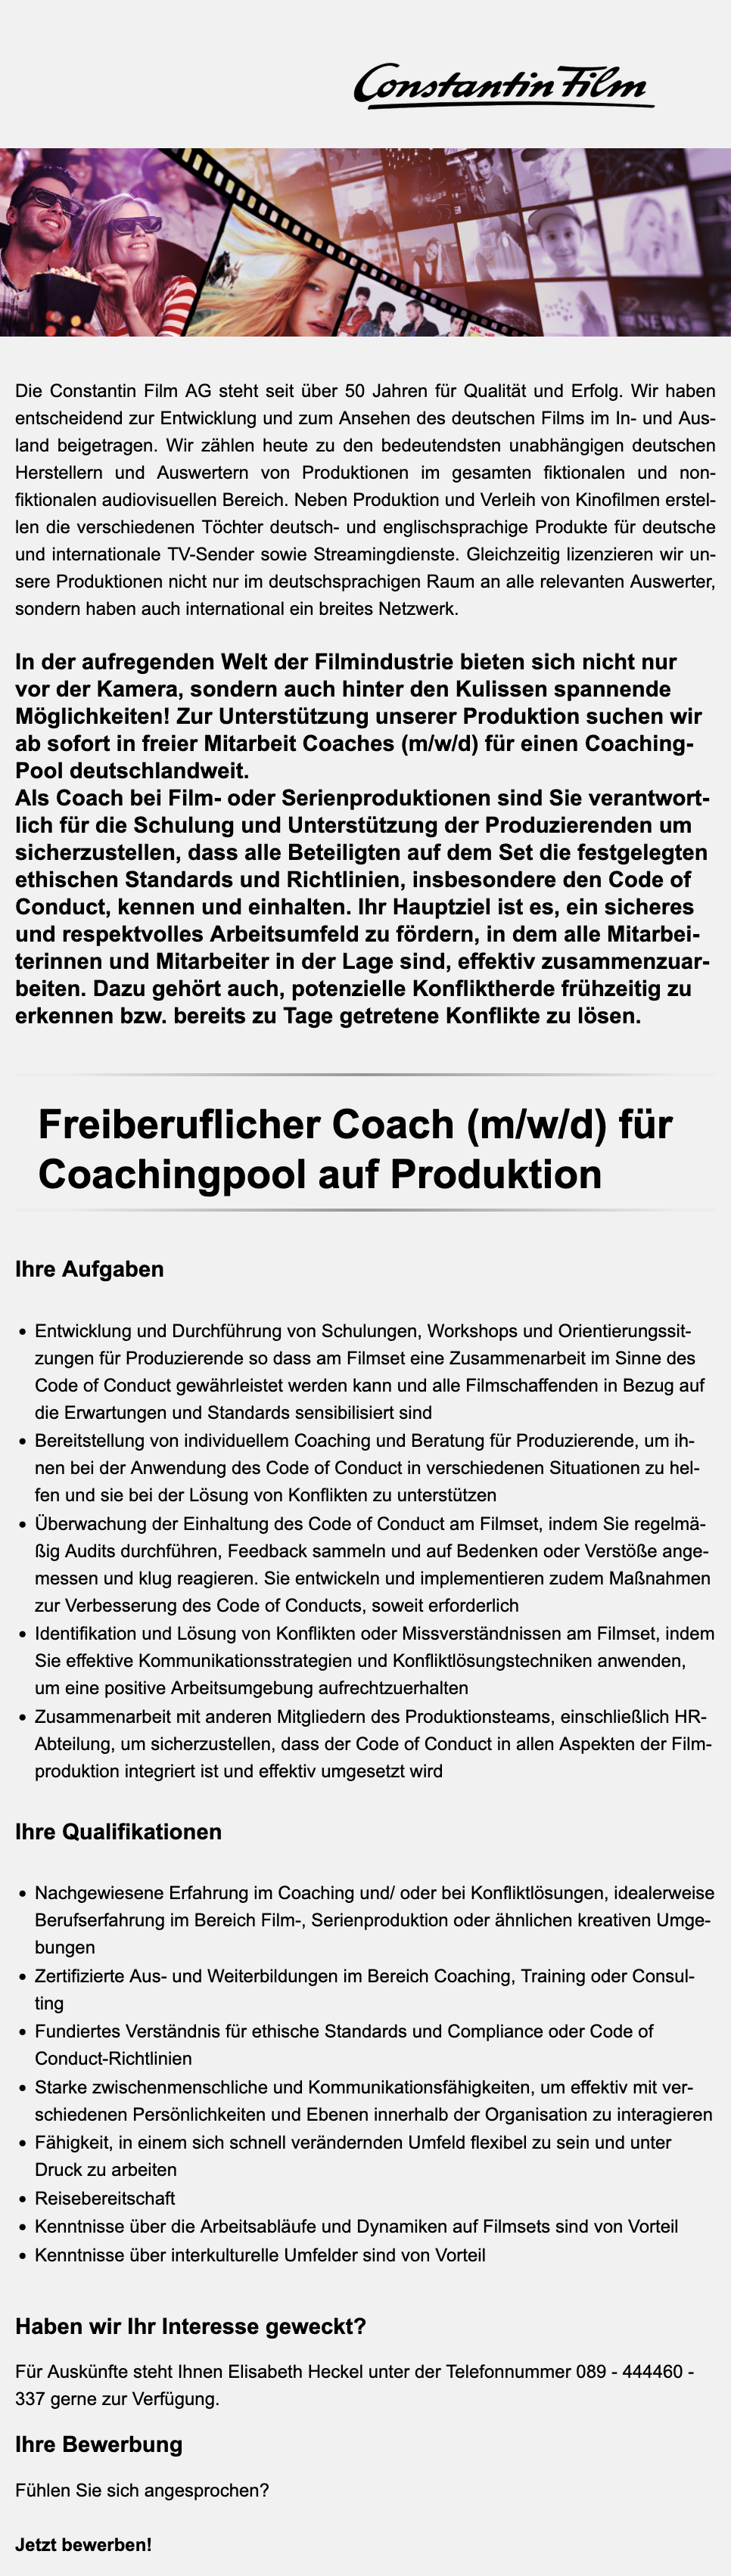 Freiberuflicher Coach (m/w/d) für Coachingpool auf Produktion